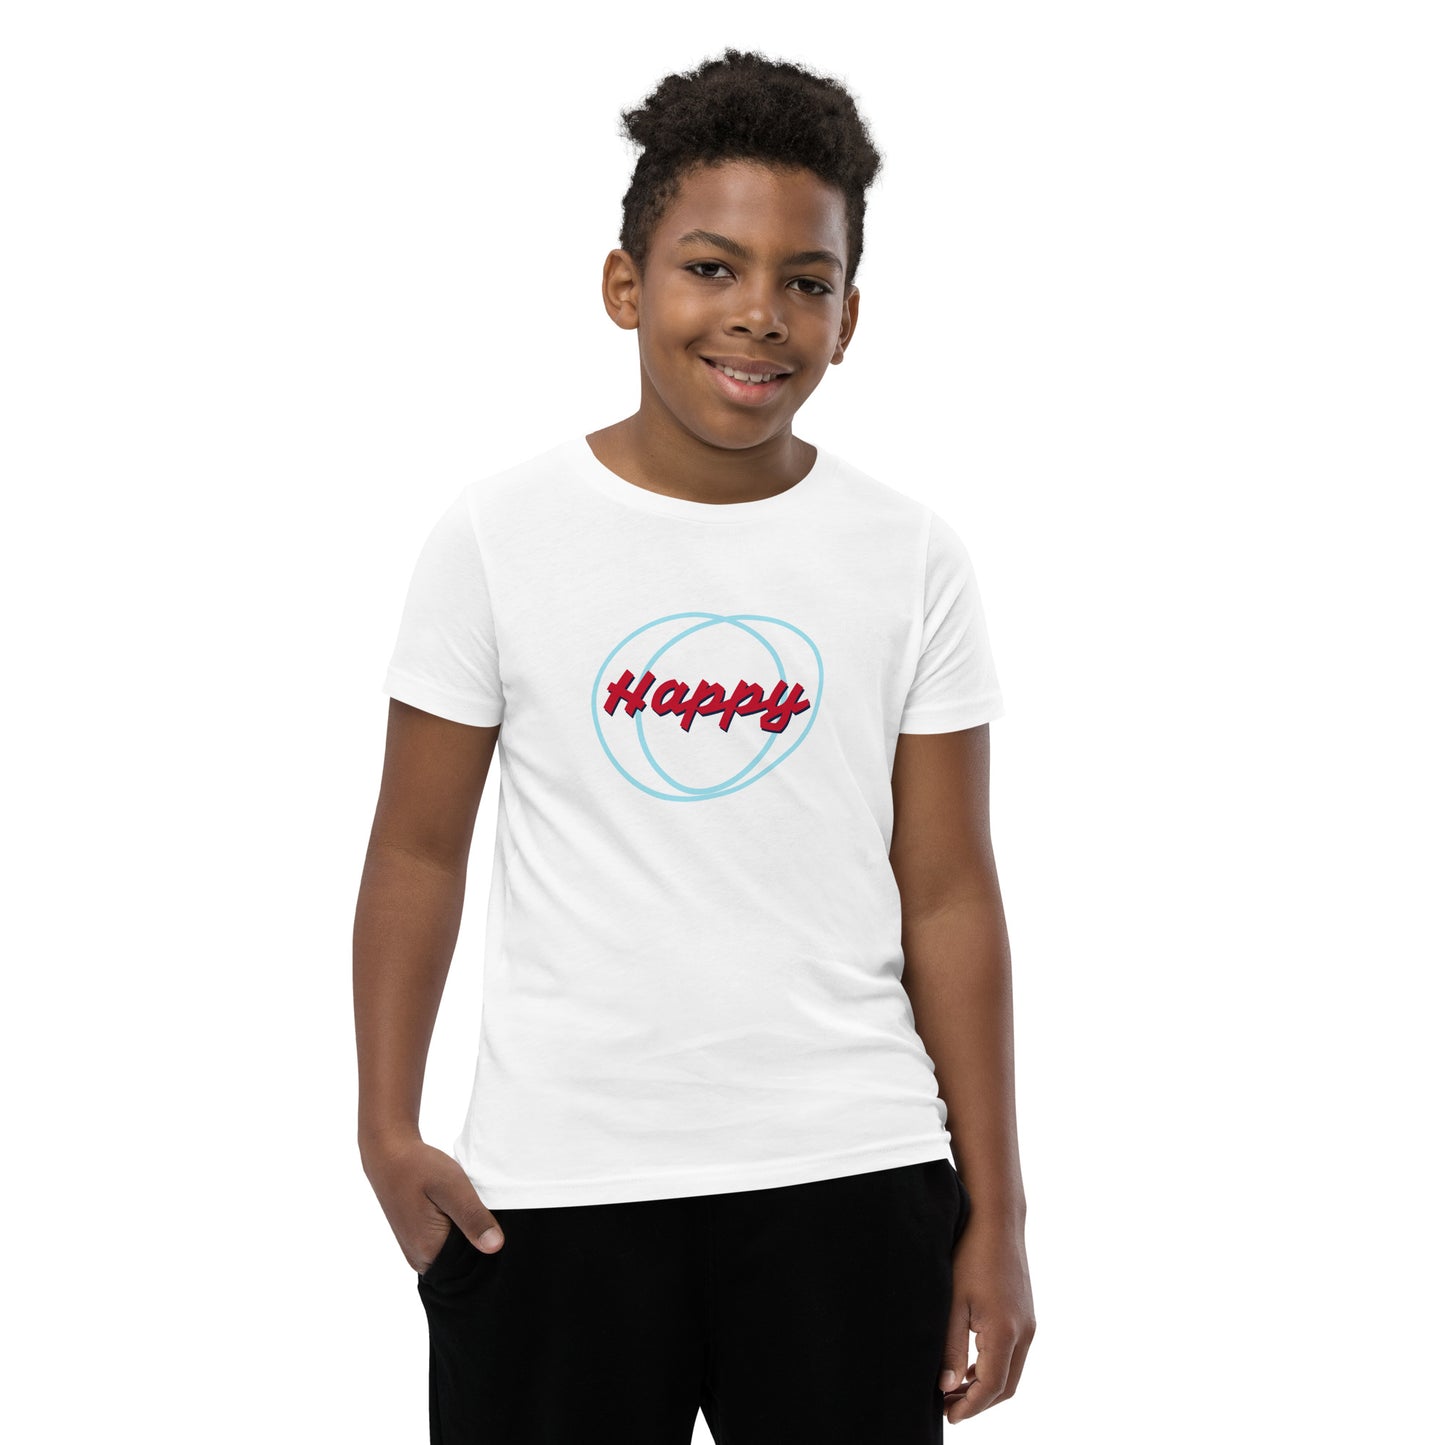 Happy Youth Short Sleeve T-Shirt